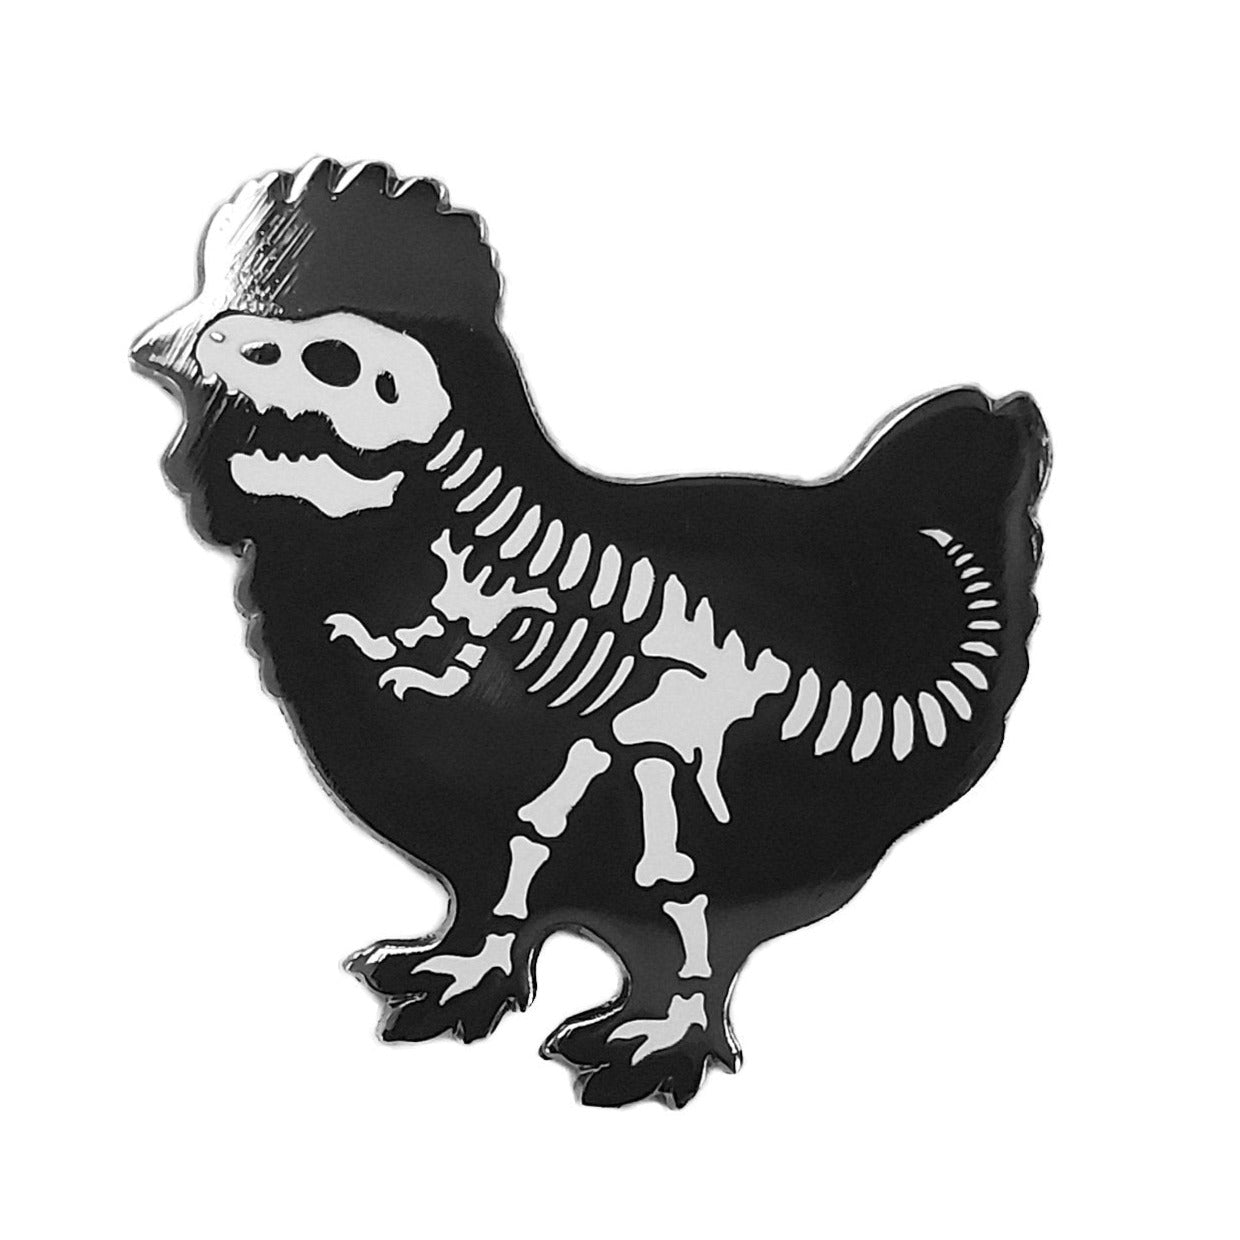 Chickensaurus Rex Enamel Pin - Kolorspun Enamel Pins